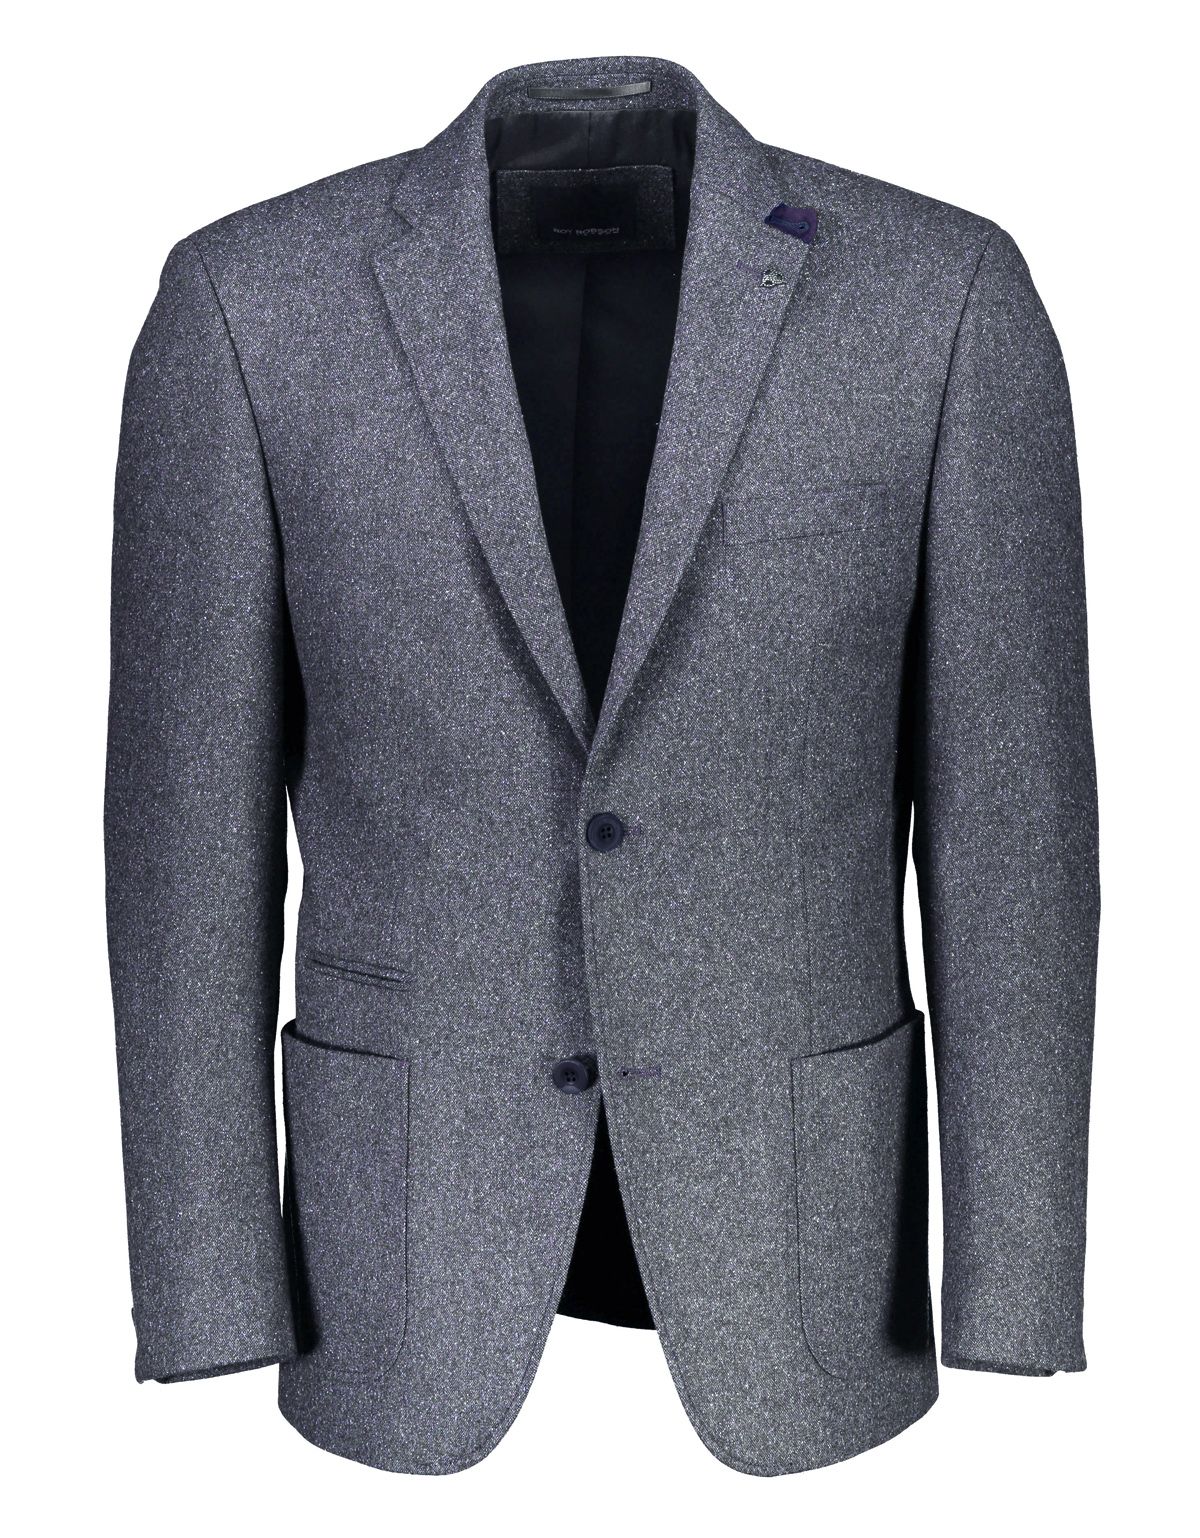 Пиджак мужской шерстяной Roy Robson c локтями из замши, modern fit | купить в интернет-магазине Olymp-Men